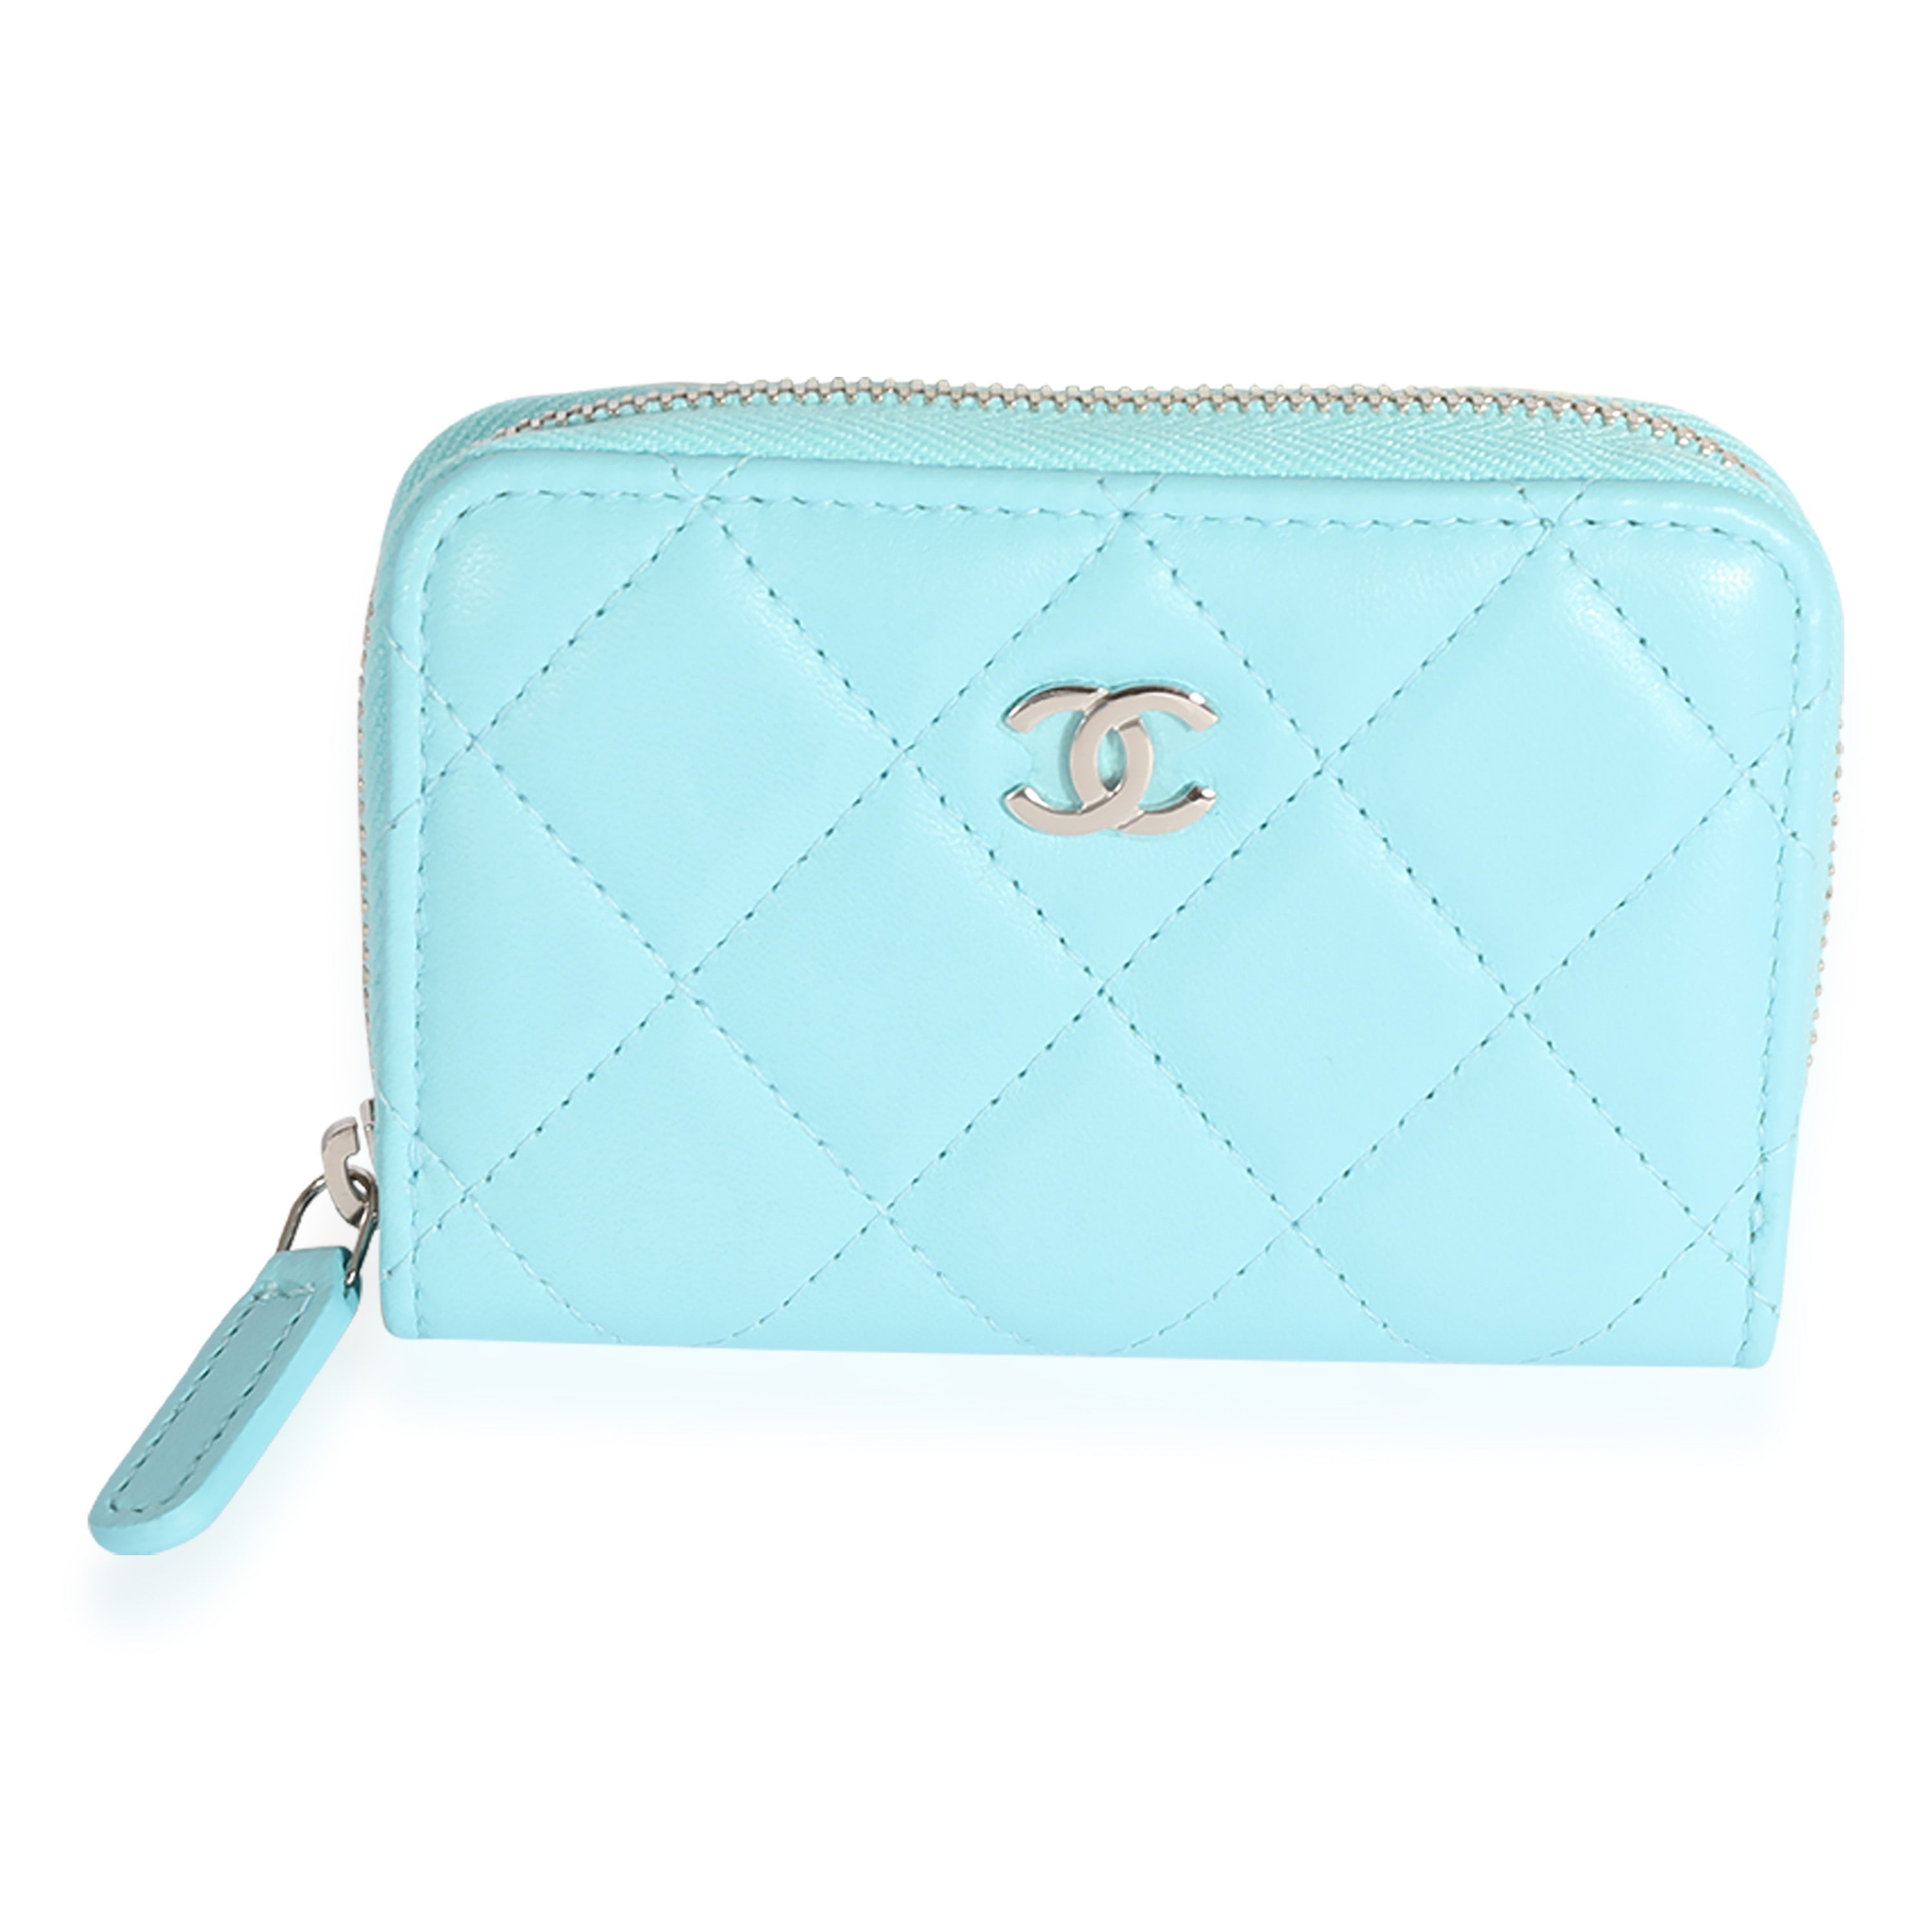 Chanel Lambskin Zippy Wallet Bright Pink – DAC